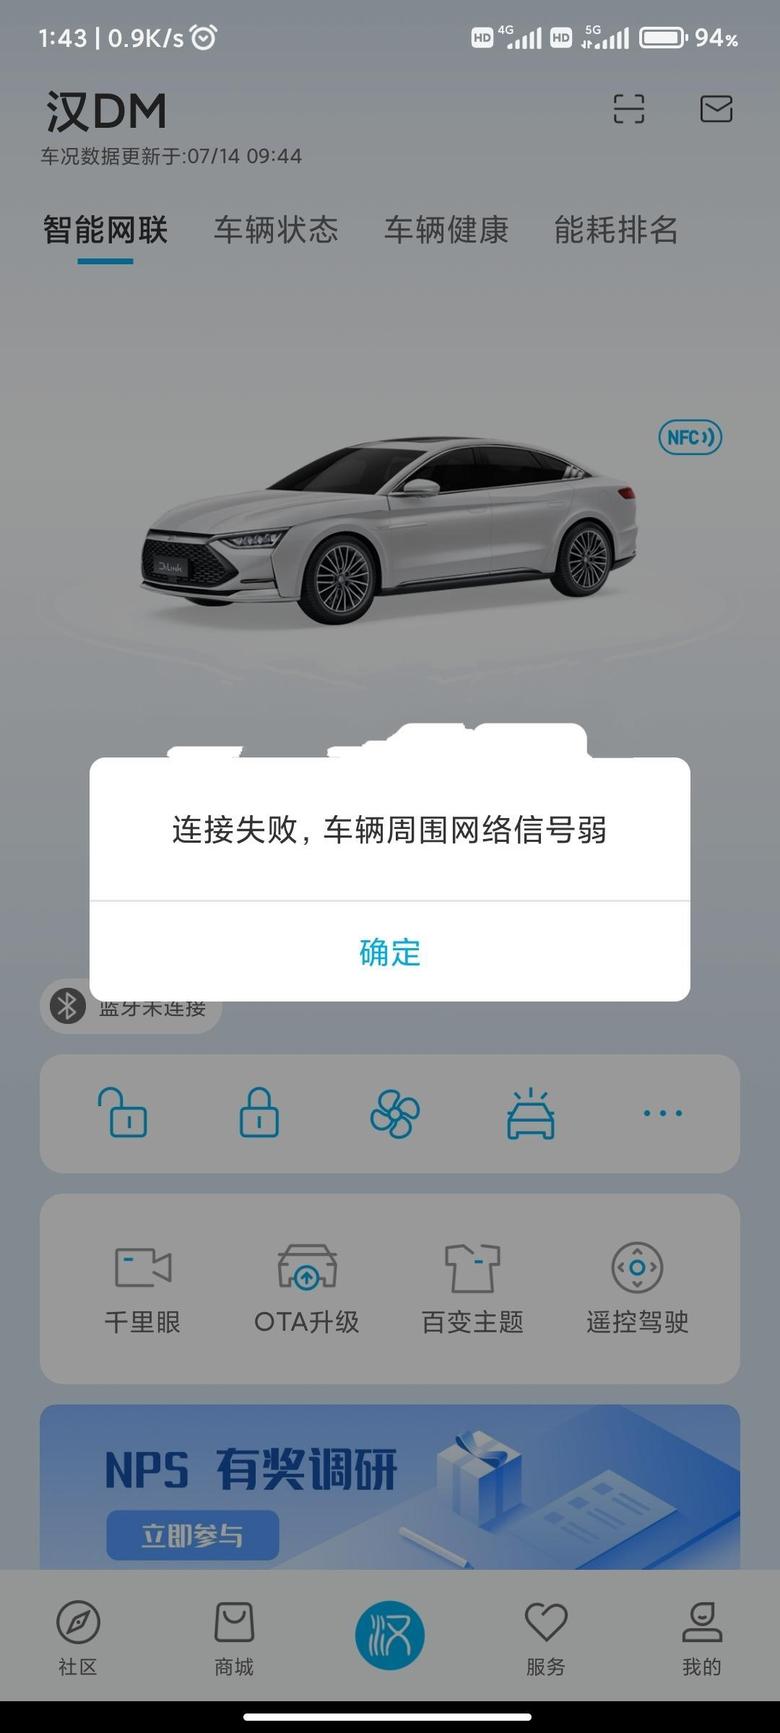 汉dm 比亚迪汽车app里边智能物联一直连不上更新不了状态，远程功能也用不了，可以肯定不是车辆周围信号问题。有没有大佬出现过这样的情况？